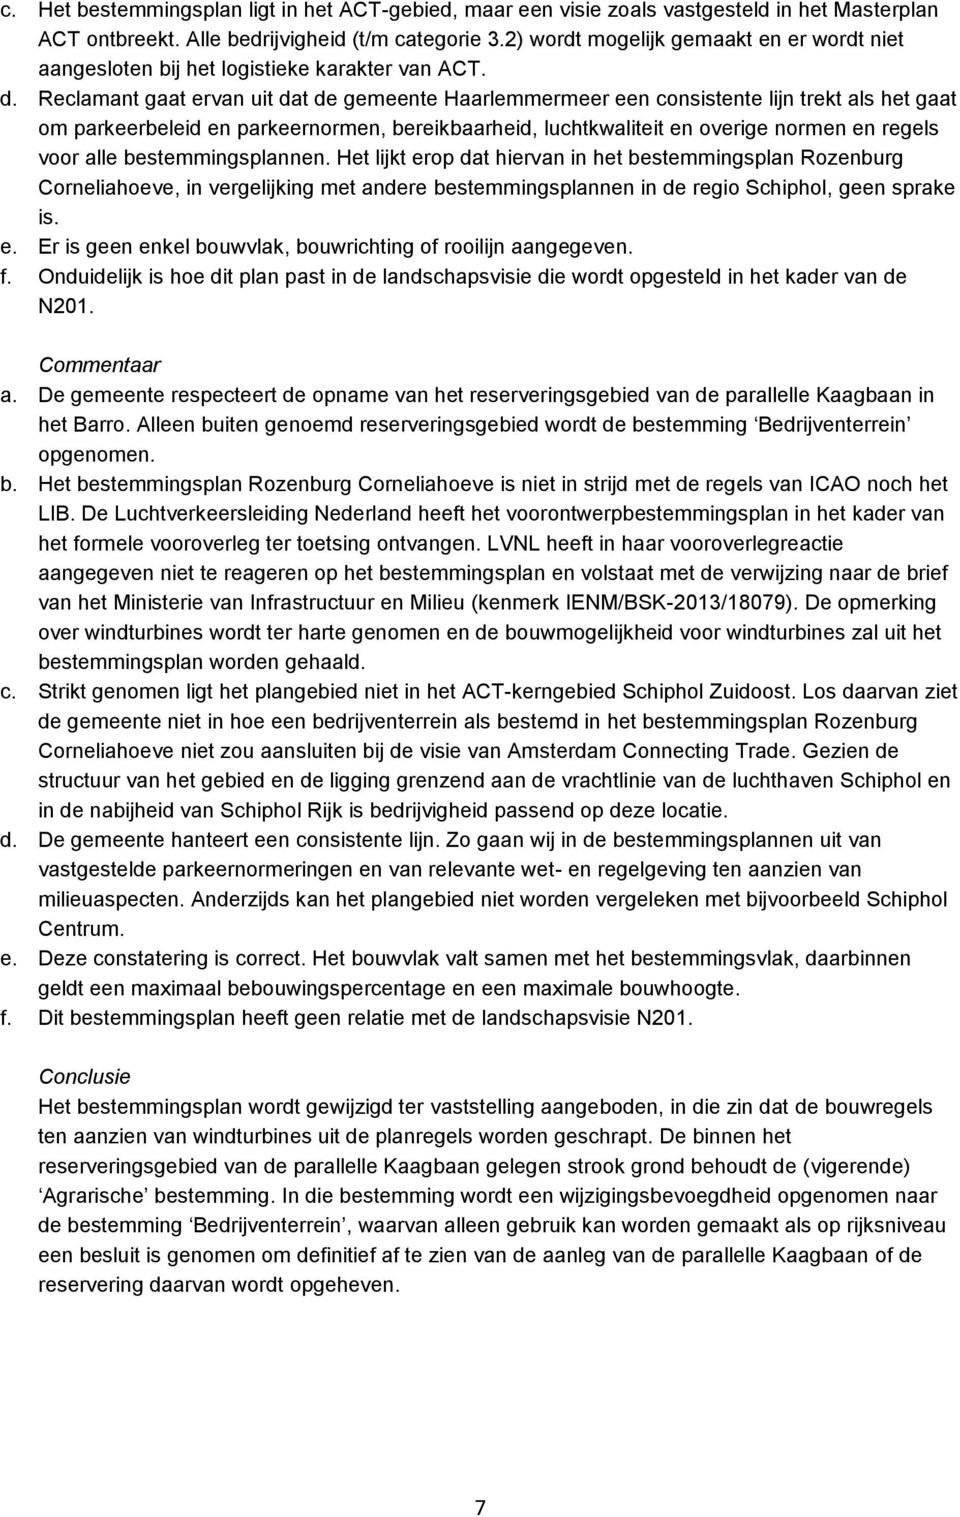 Reclamant gaat ervan uit dat de gemeente Haarlemmermeer een consistente lijn trekt als het gaat om parkeerbeleid en parkeernormen, bereikbaarheid, luchtkwaliteit en overige normen en regels voor alle